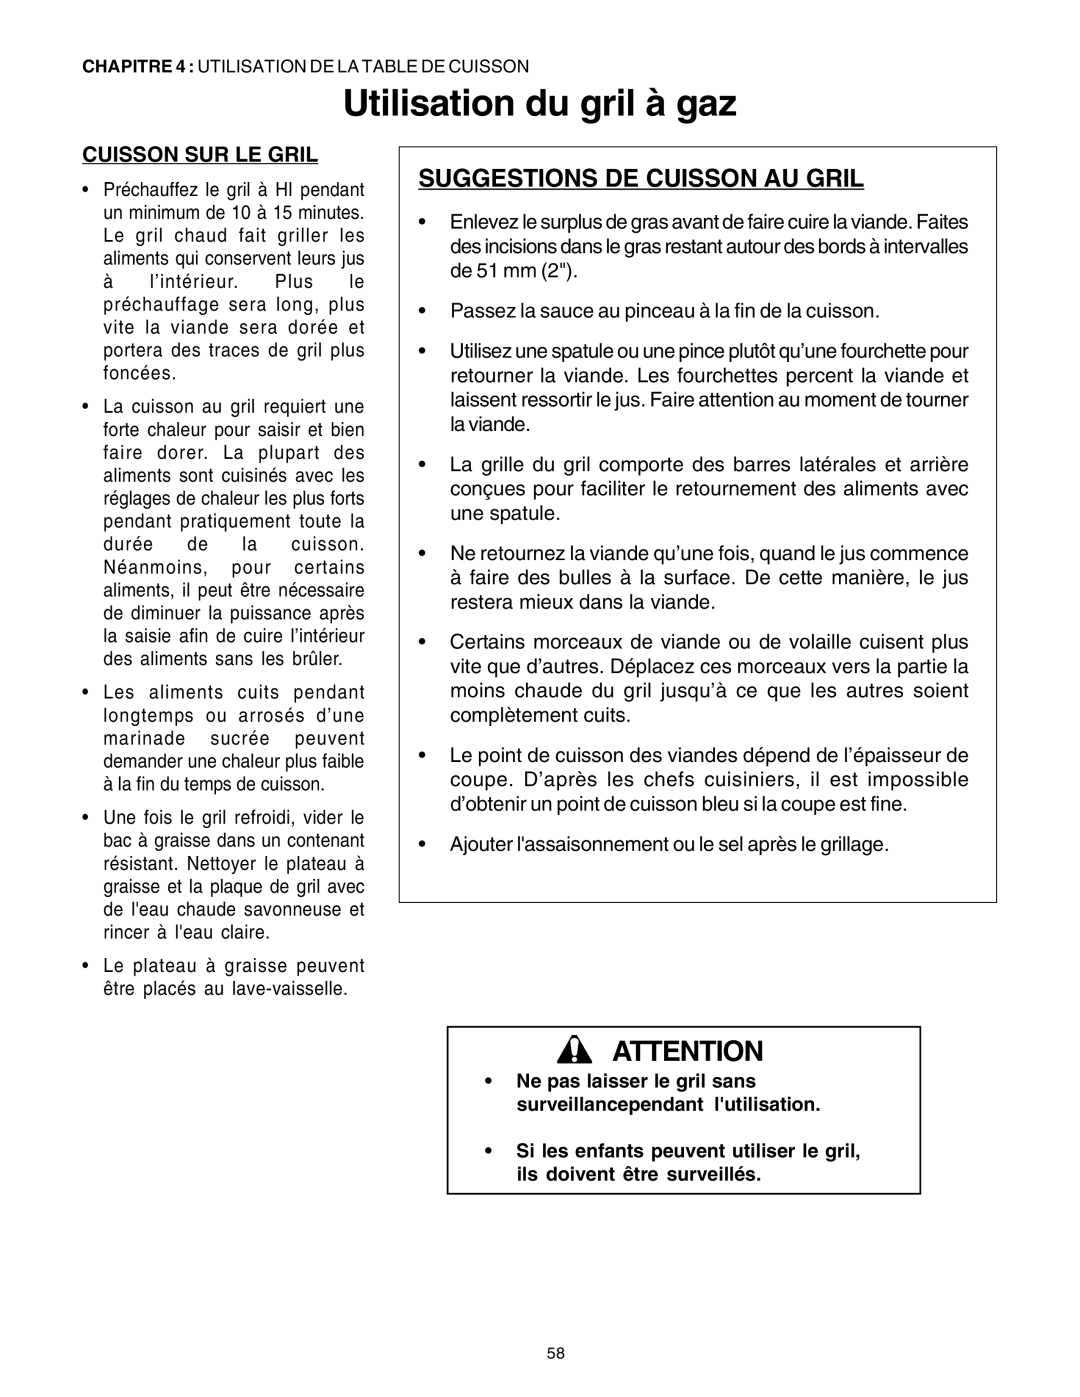 Thermador DP30 manual Suggestions De Cuisson Au Gril, Cuisson Sur Le Gril, Utilisation du gril à gaz 